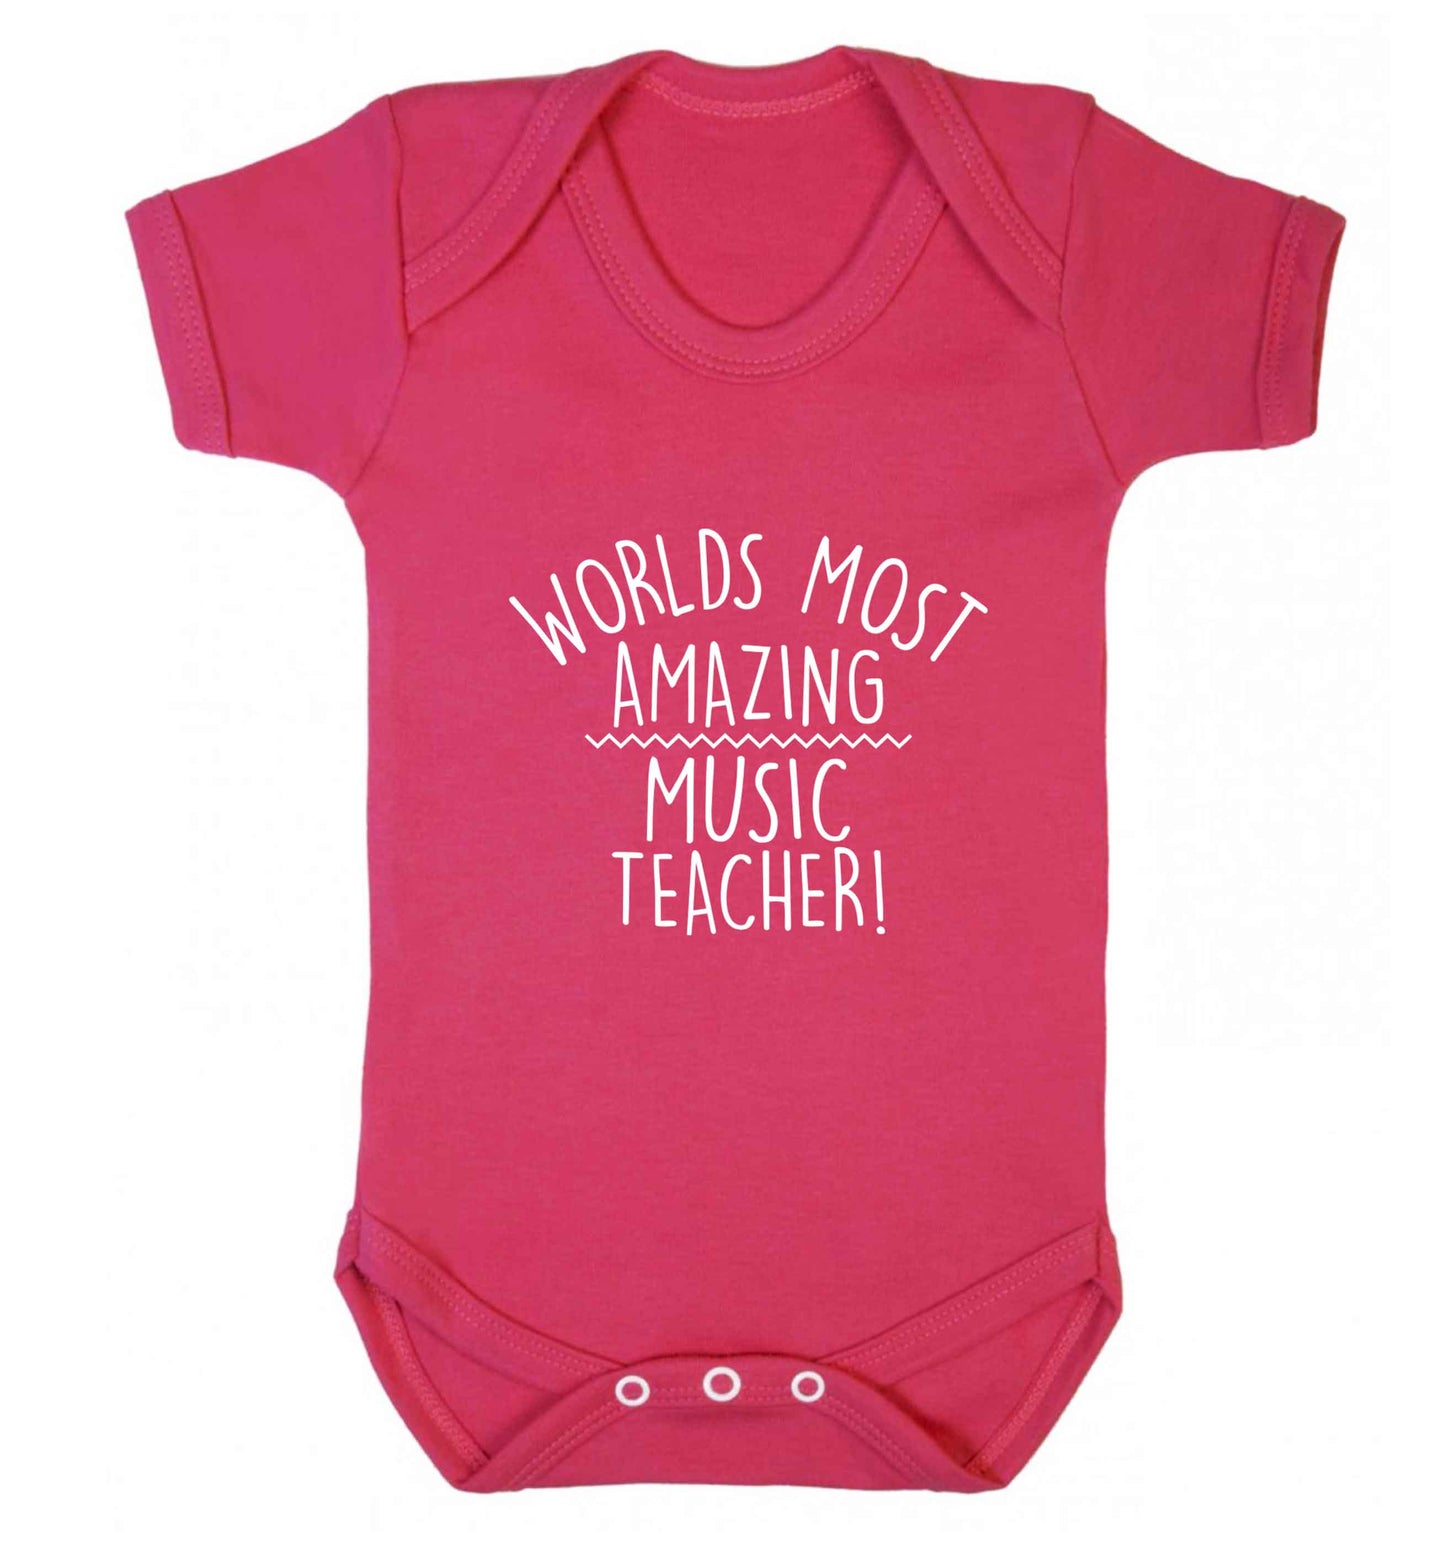 Worlds most amazing music teacher baby vest dark pink 18-24 months